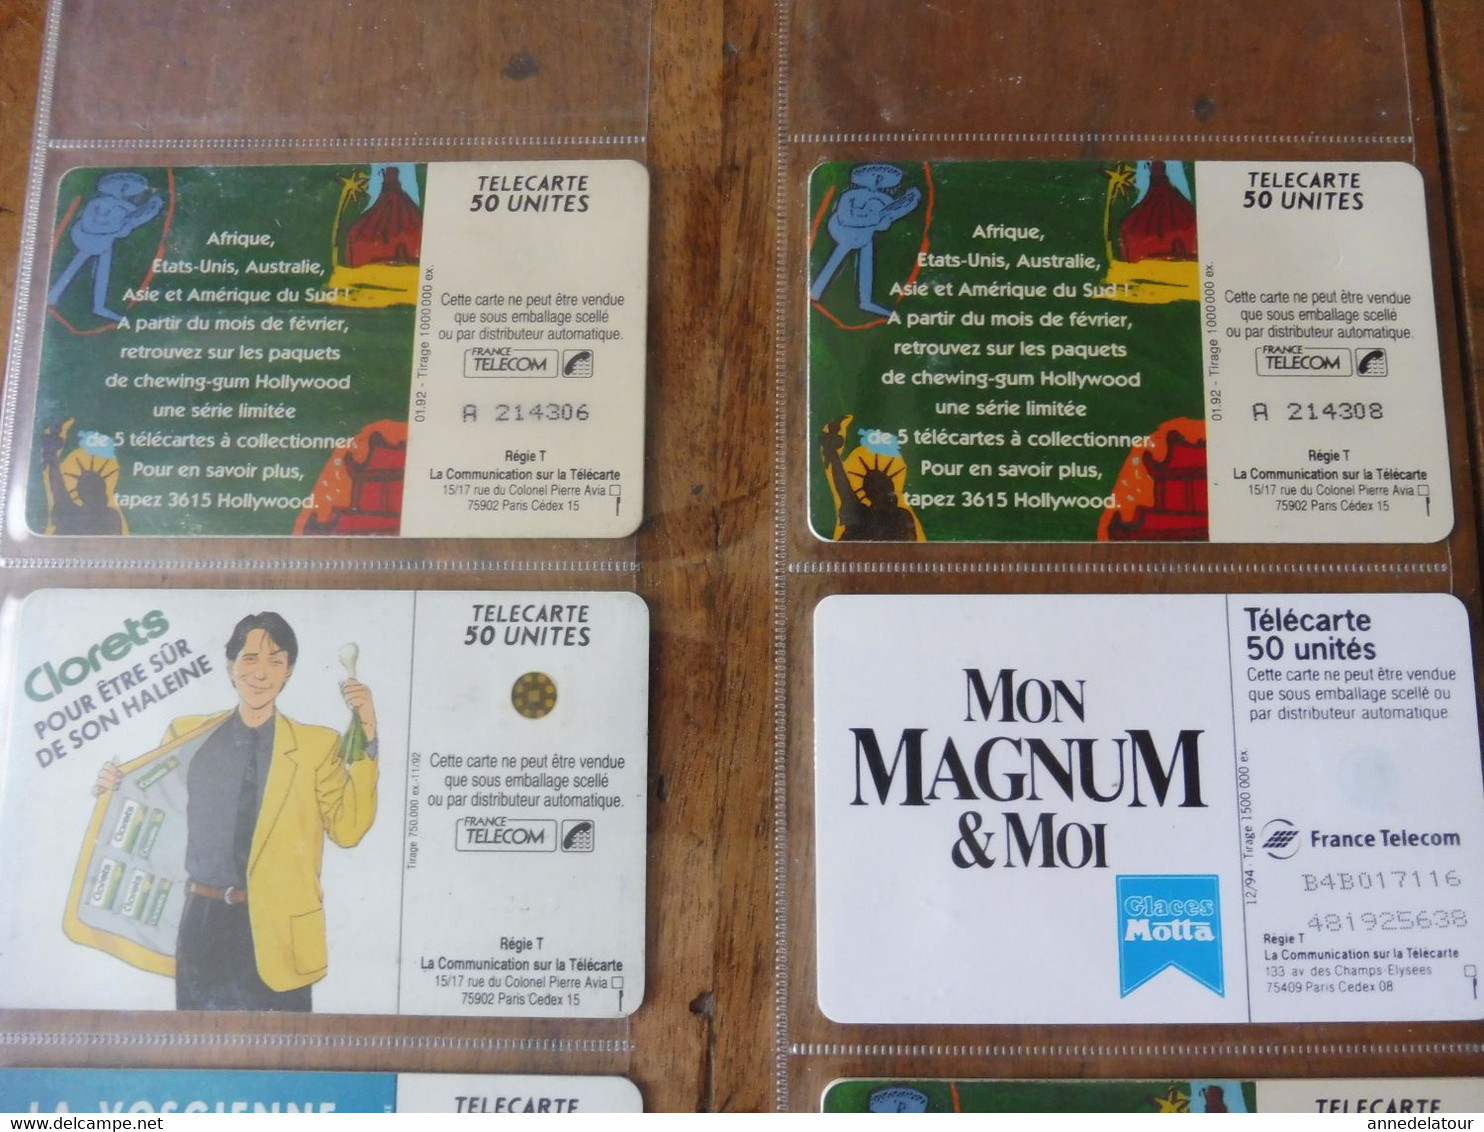 8 Télécartes  FRANCE TELECOM   publicités pour (variétés de chewing gum, Tic Tac, Magnum , Suc des Vosges, etc)